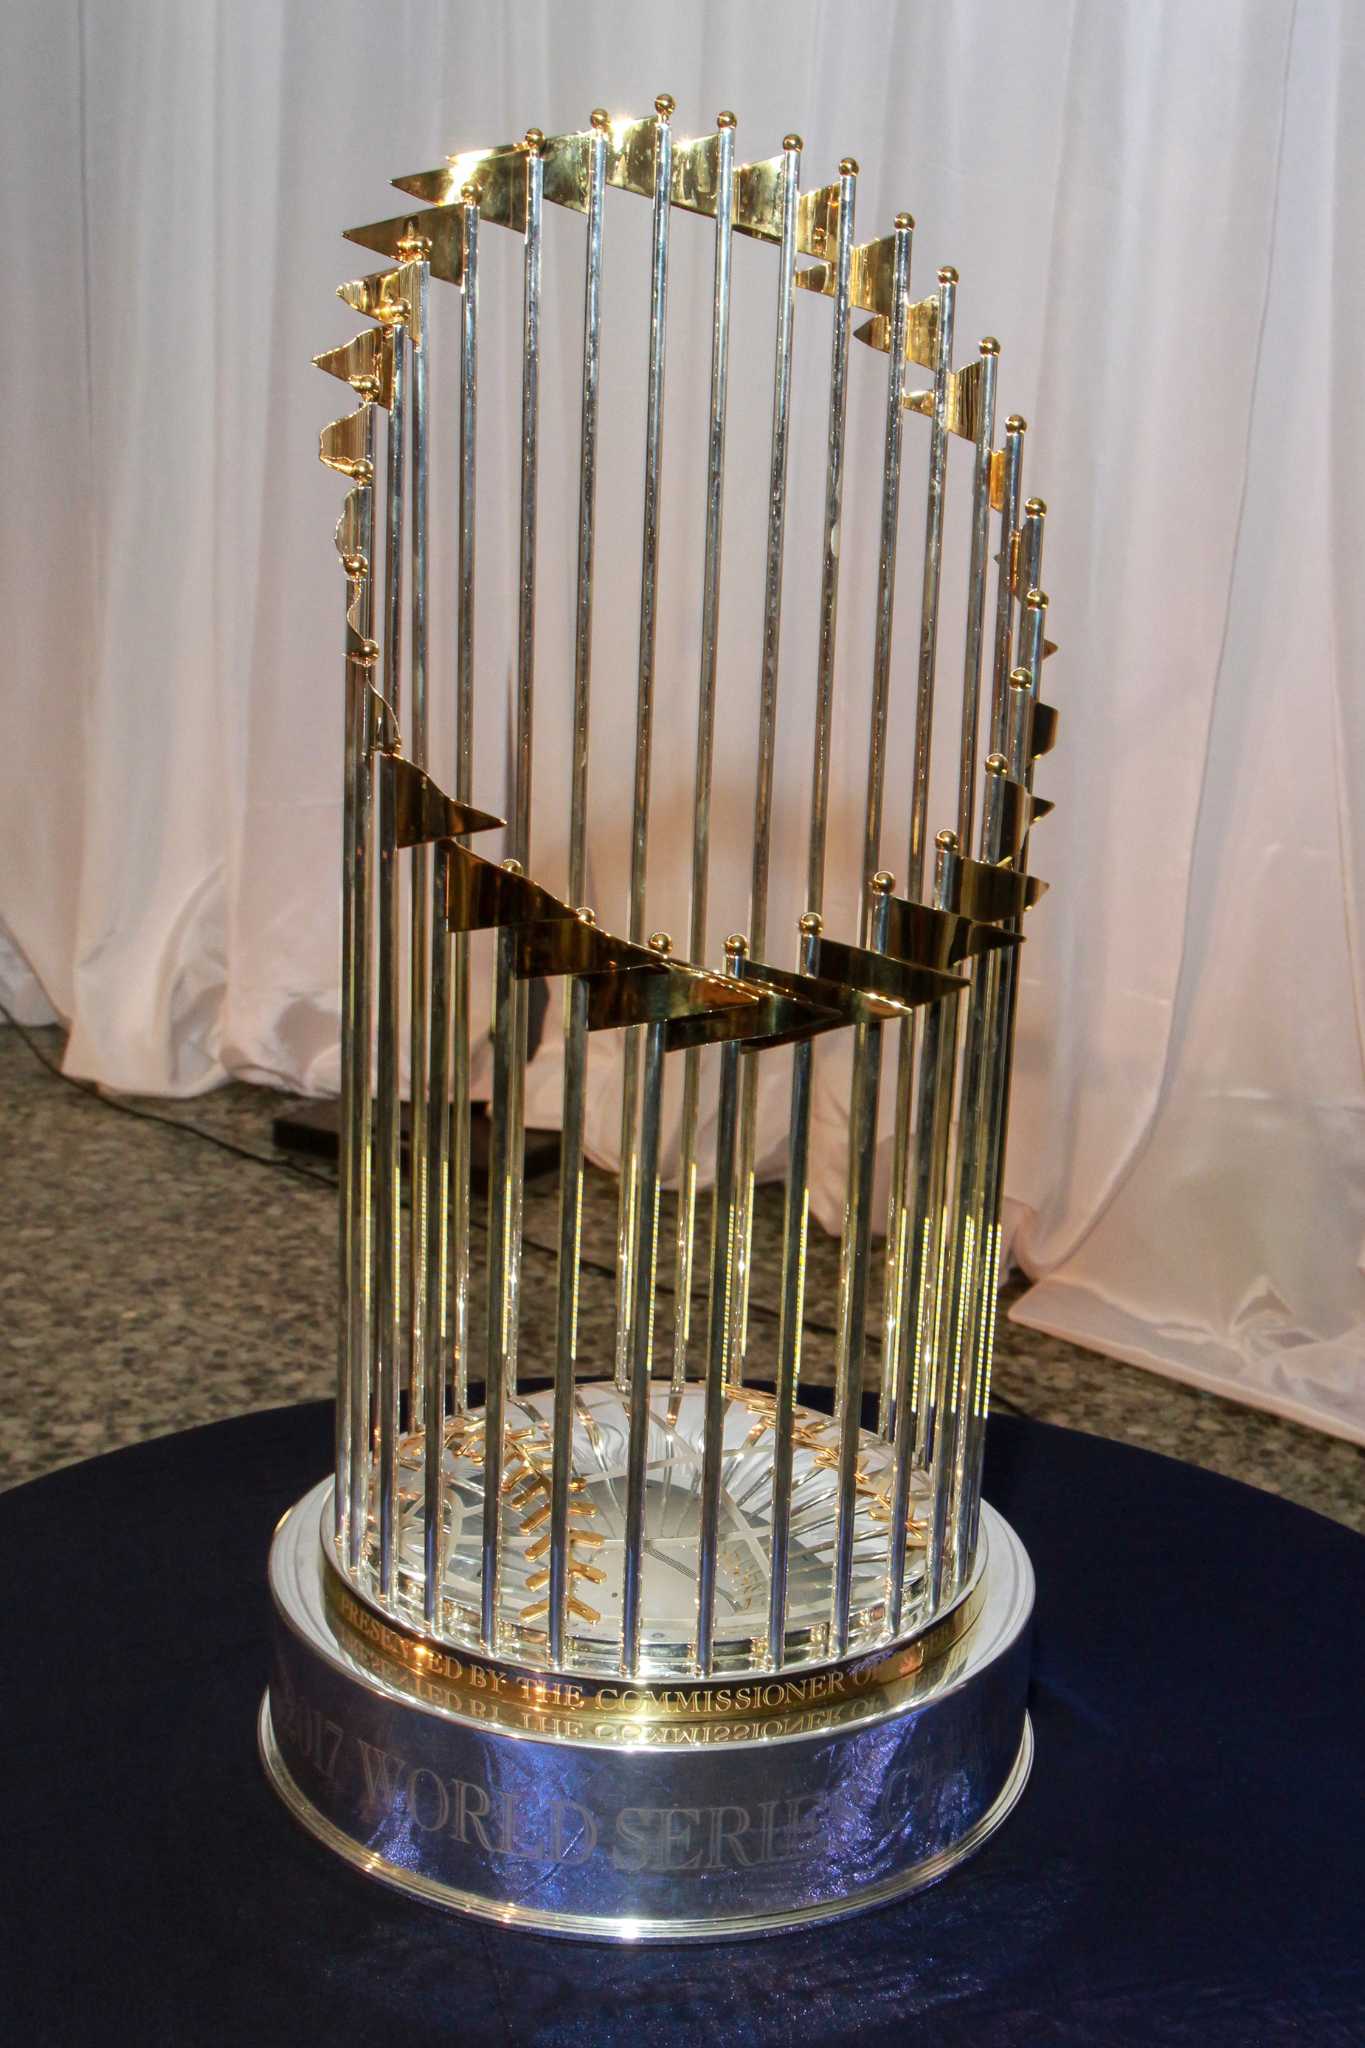 World Series trophy takes a tumble at Houston men's gala